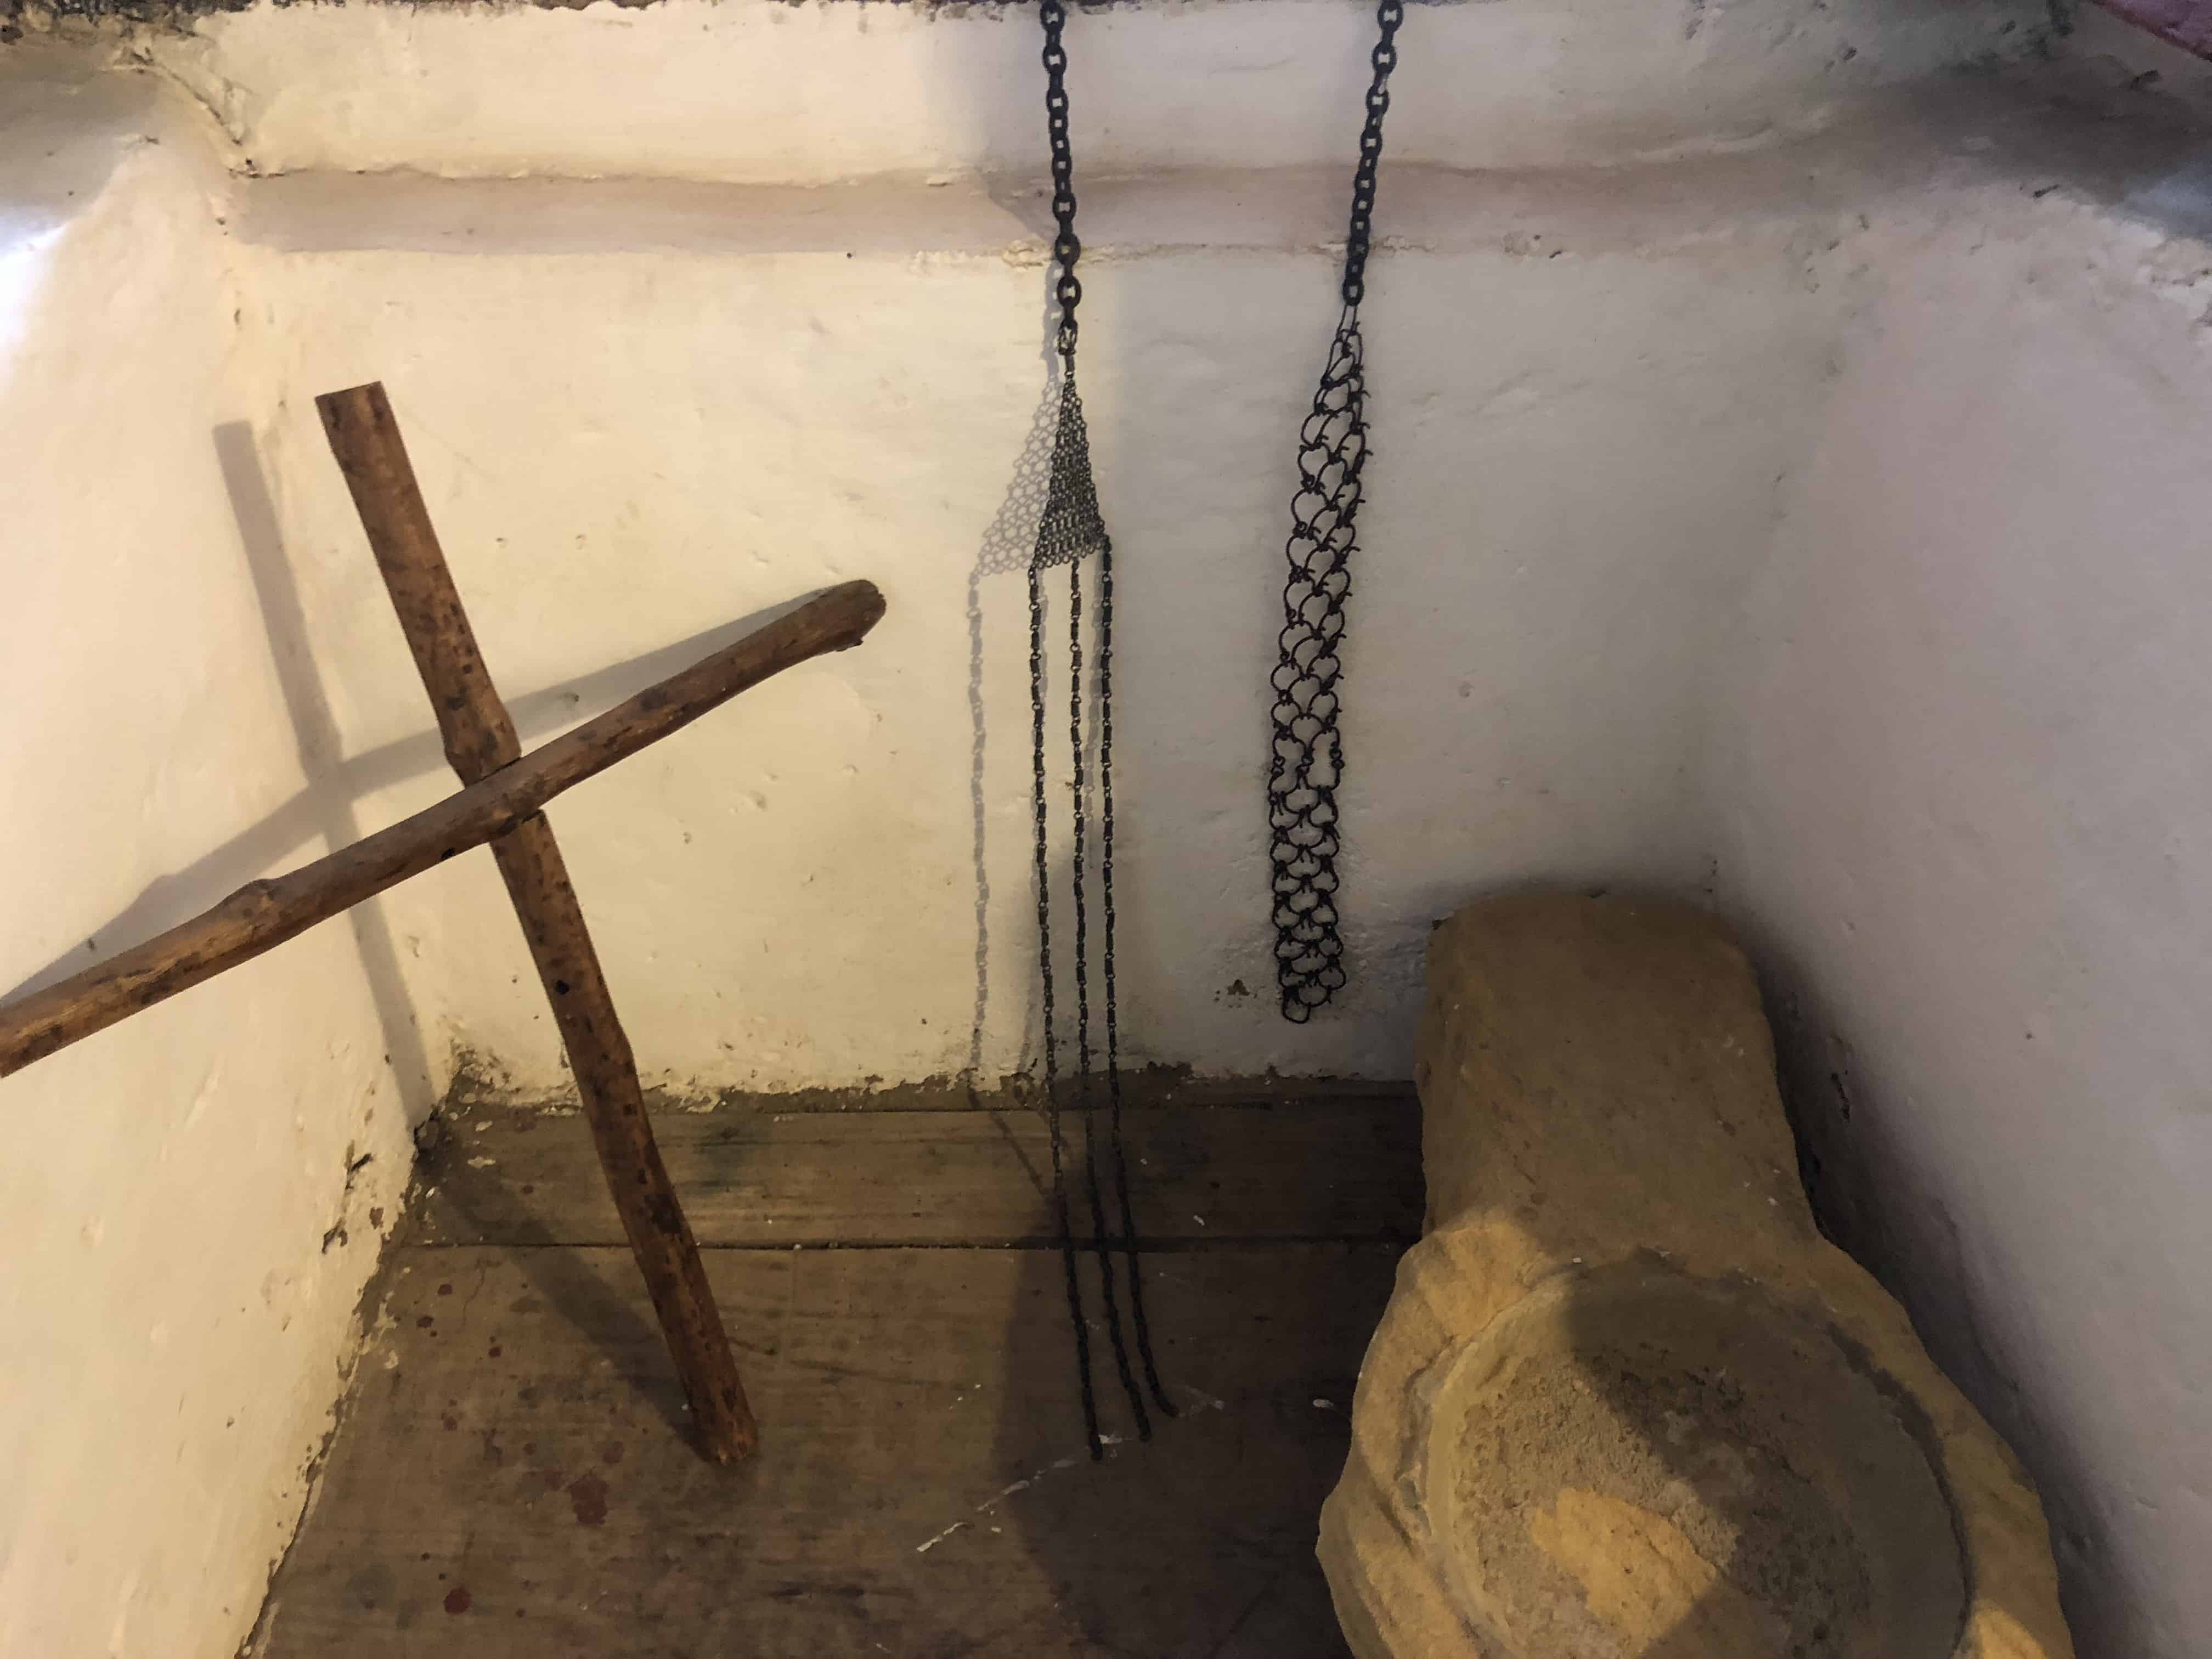 Self-flagellation devices at La Candelaria Monastery, Boyacá, Colombia